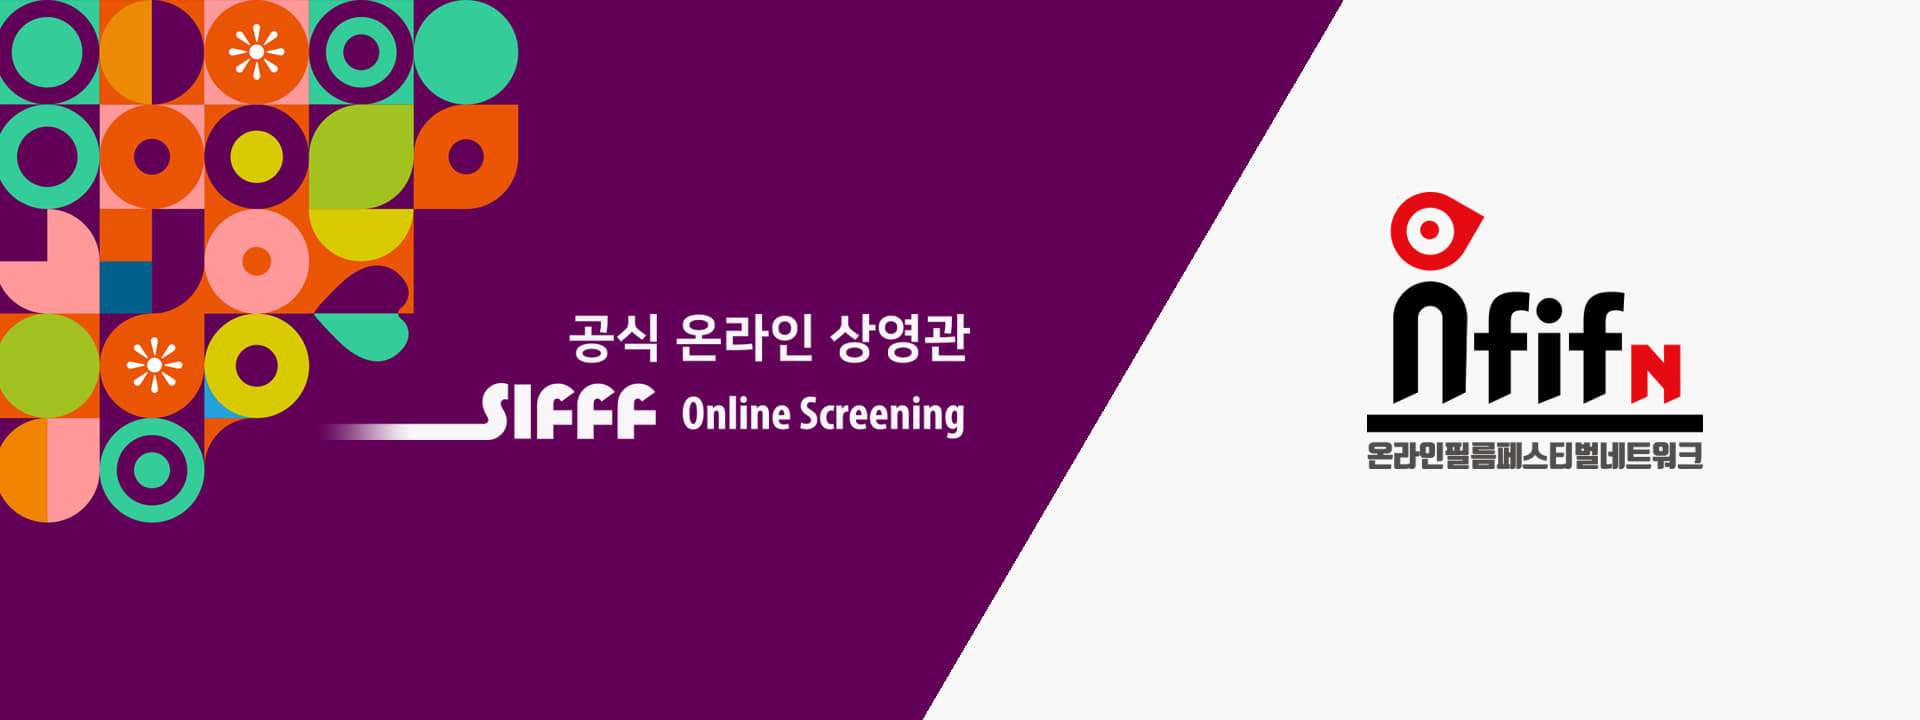 공식 온라인 상영관 SIFFF online Screening